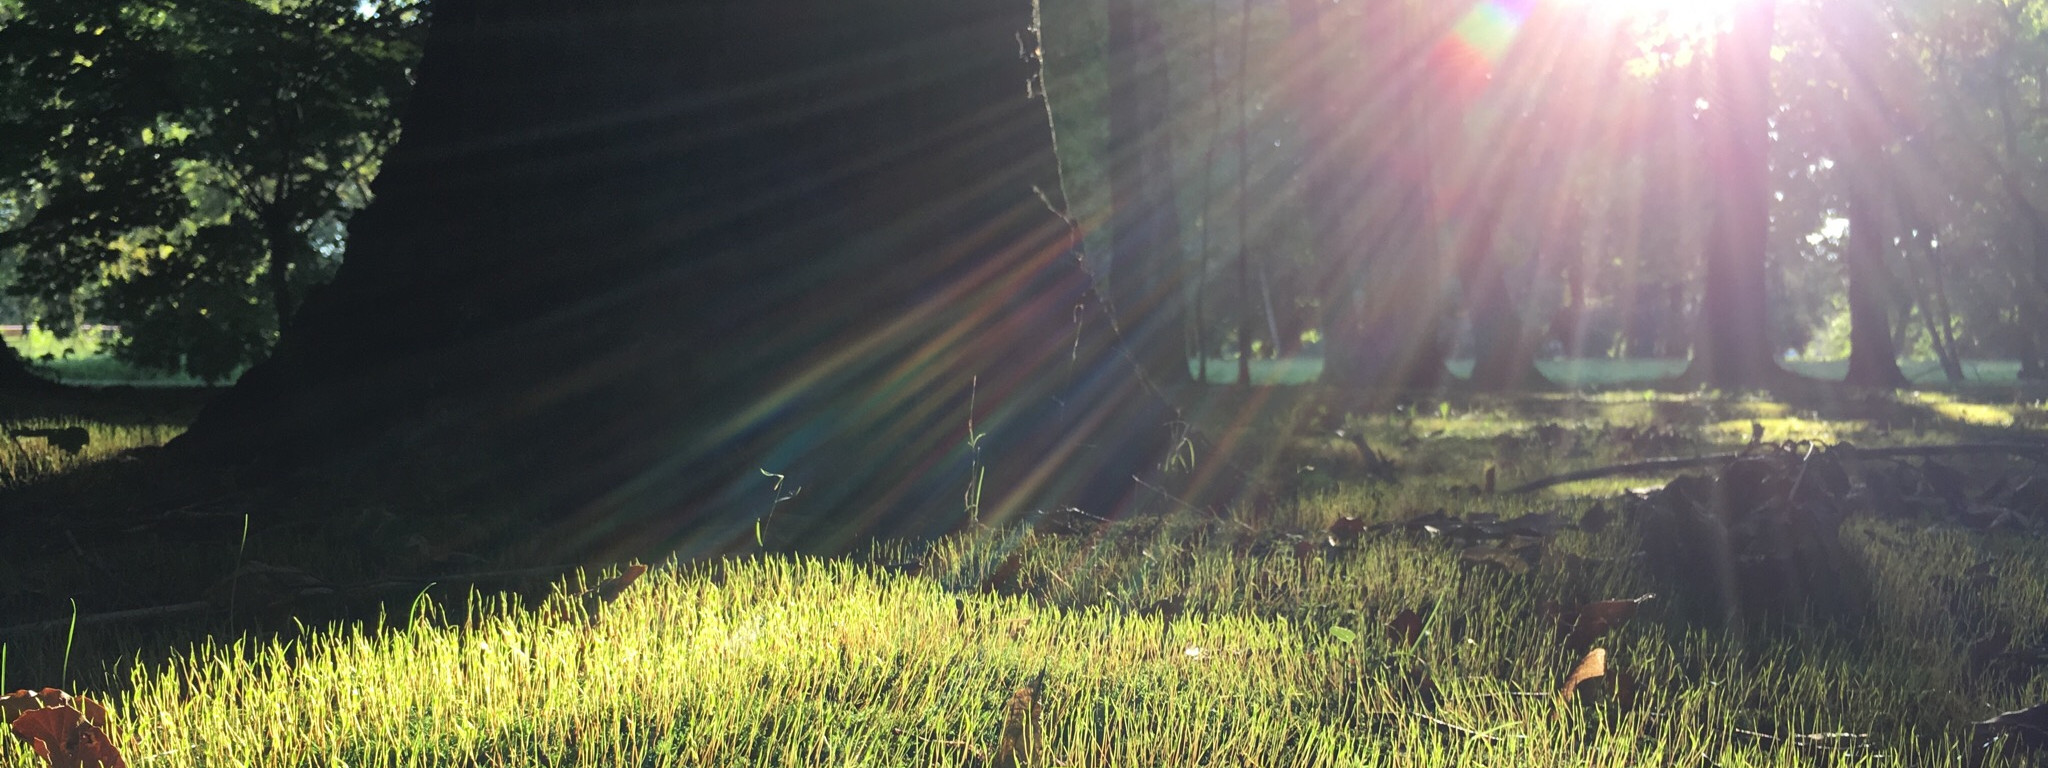 Słońce rozświetlające trawę wśród drzew